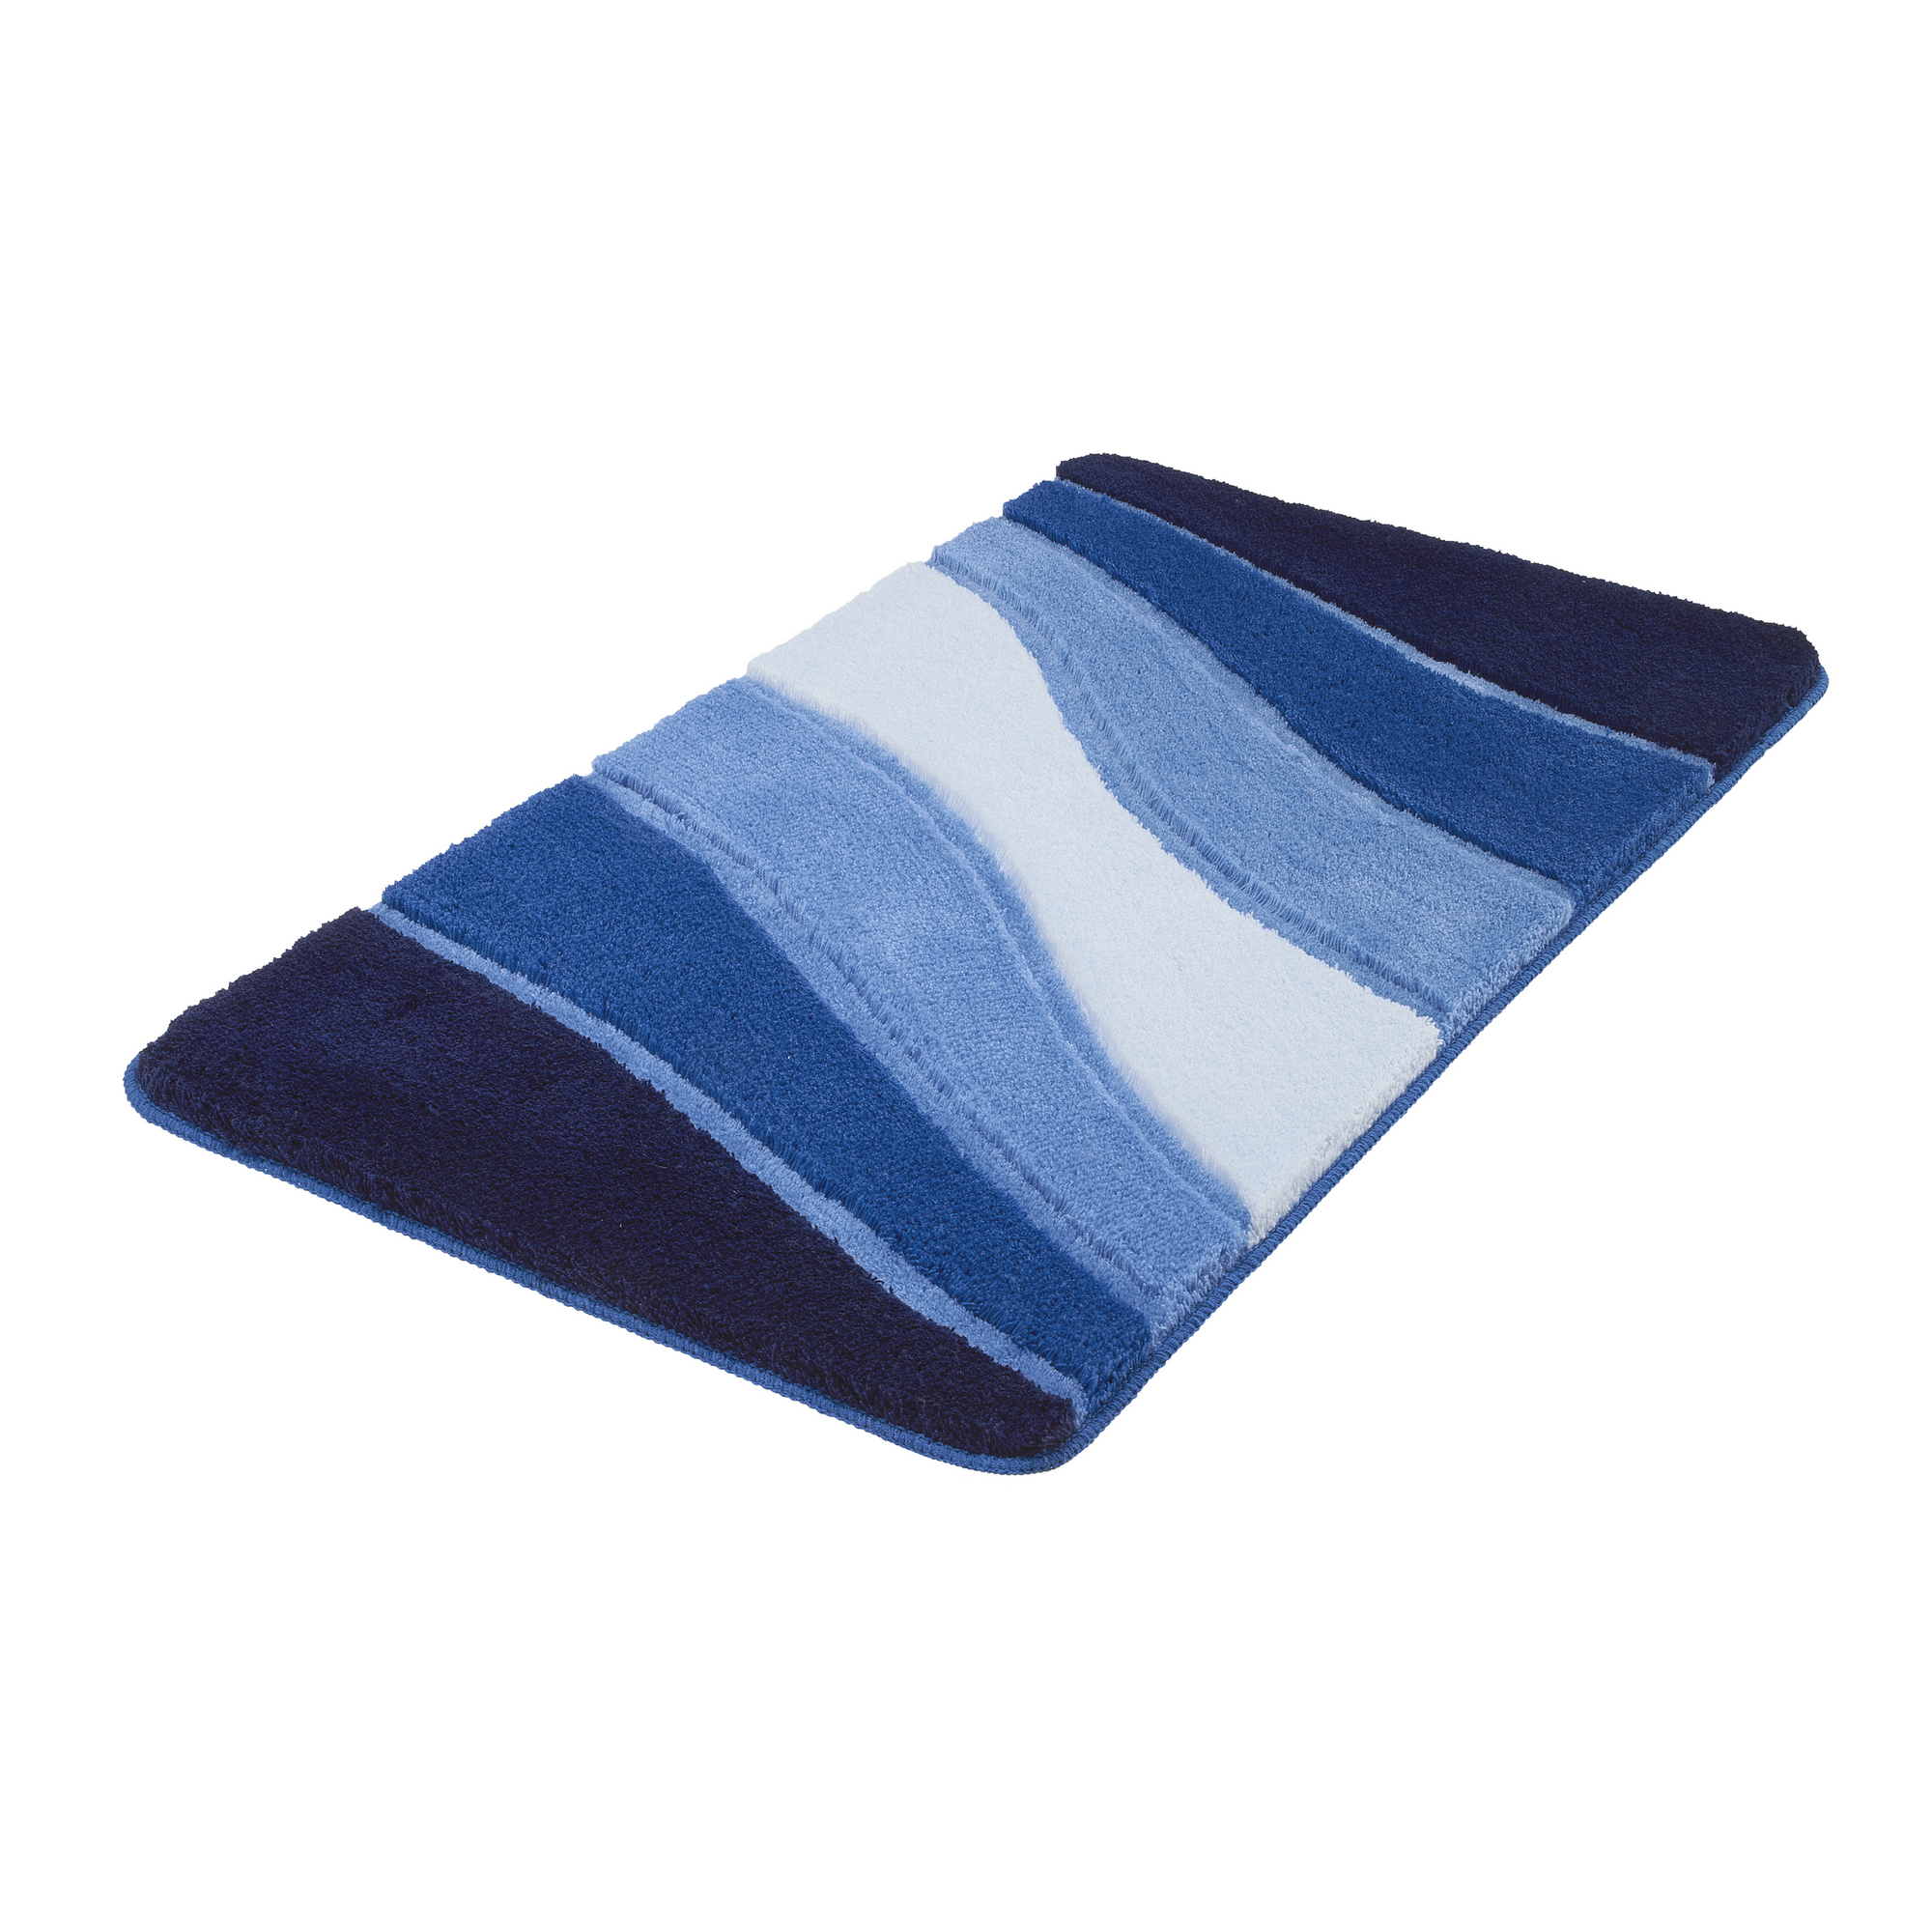 Badteppich 'Ocean' blau 60 x 100 cm + product picture